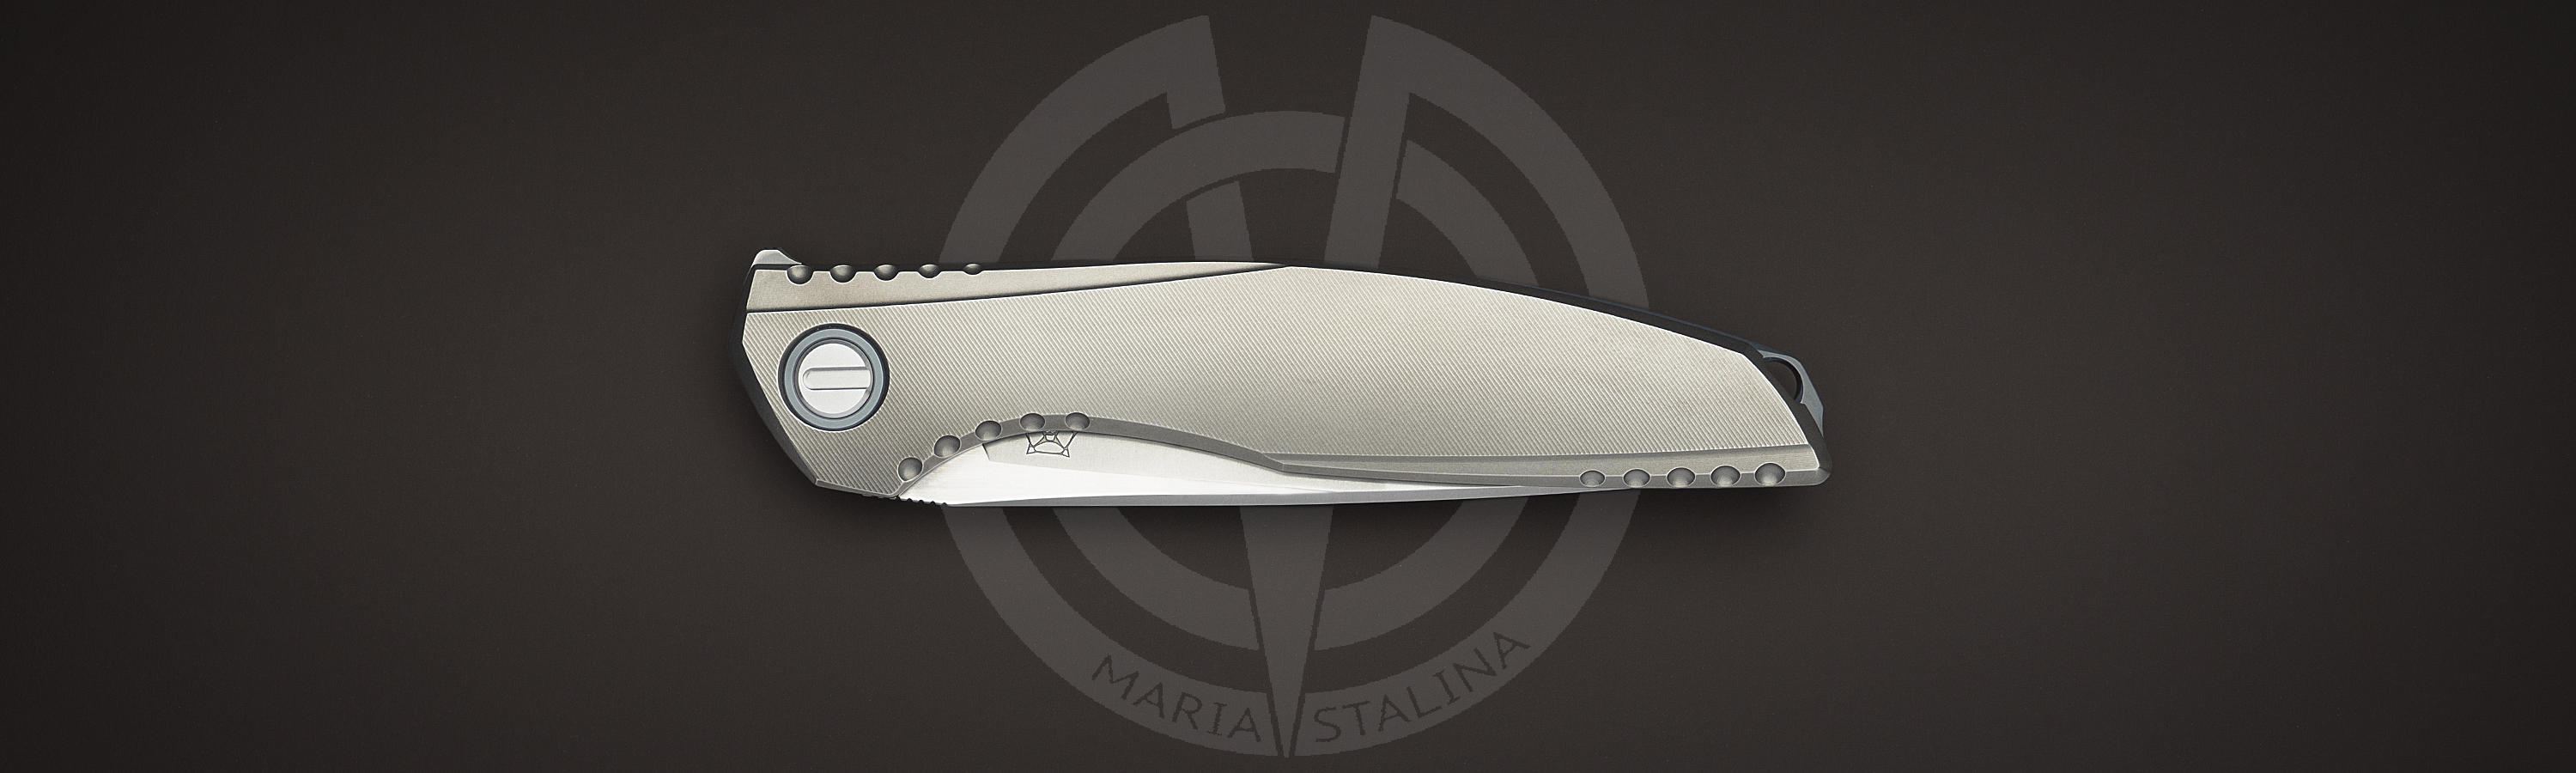 Titanium handle of 110 Kickstop knife